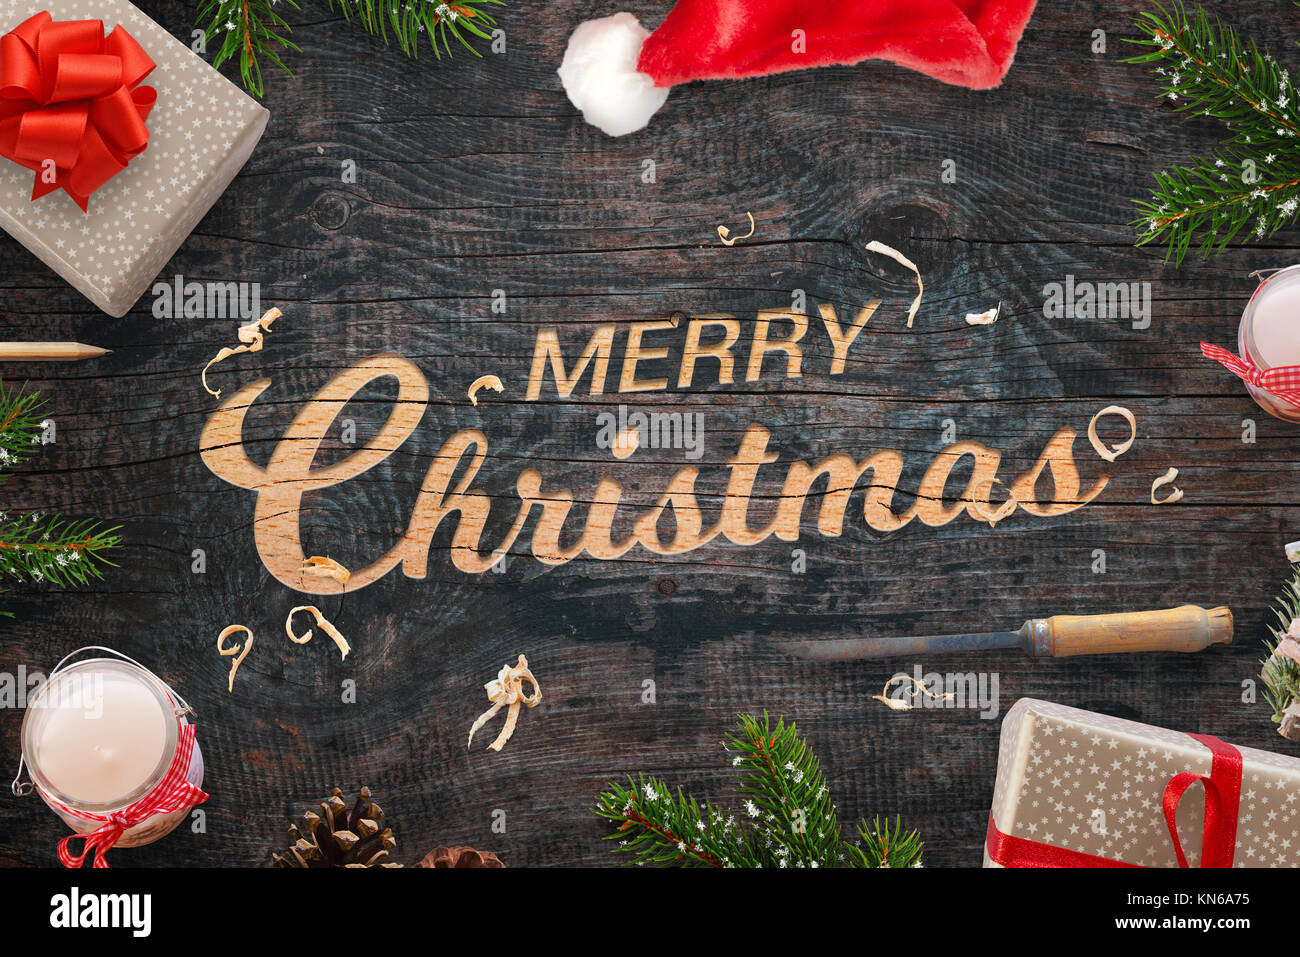 Feliz Navidad saludo talladas en una superficie de madera. Regalos de Navidad, ramas de árboles, cincel, velas, piñas y Santa Claus hat junto. Foto de stock